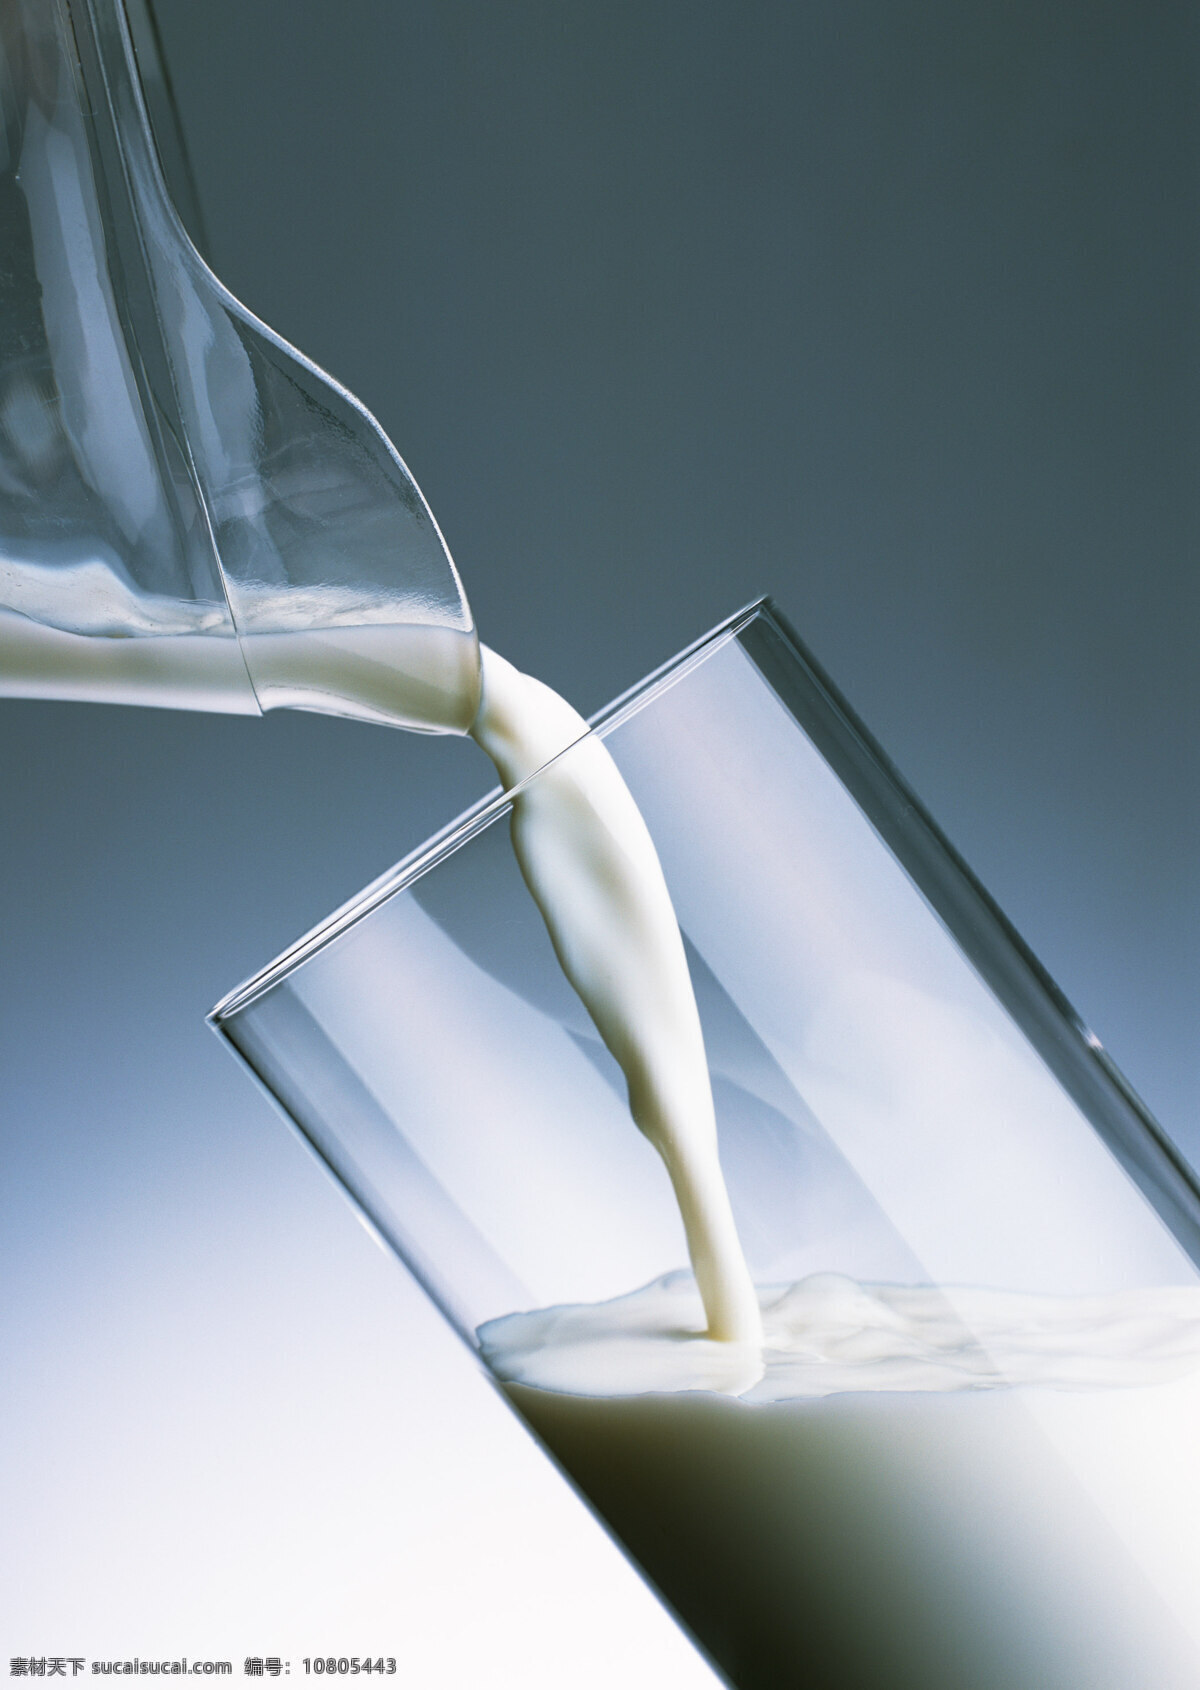 鲜牛奶 牛奶 奶制品 鲜奶 早餐奶 饮品 奶饮料 饮料 玻璃杯 玻璃瓶 桌面 案板 营养 美食摄影 餐饮美食 传统美食